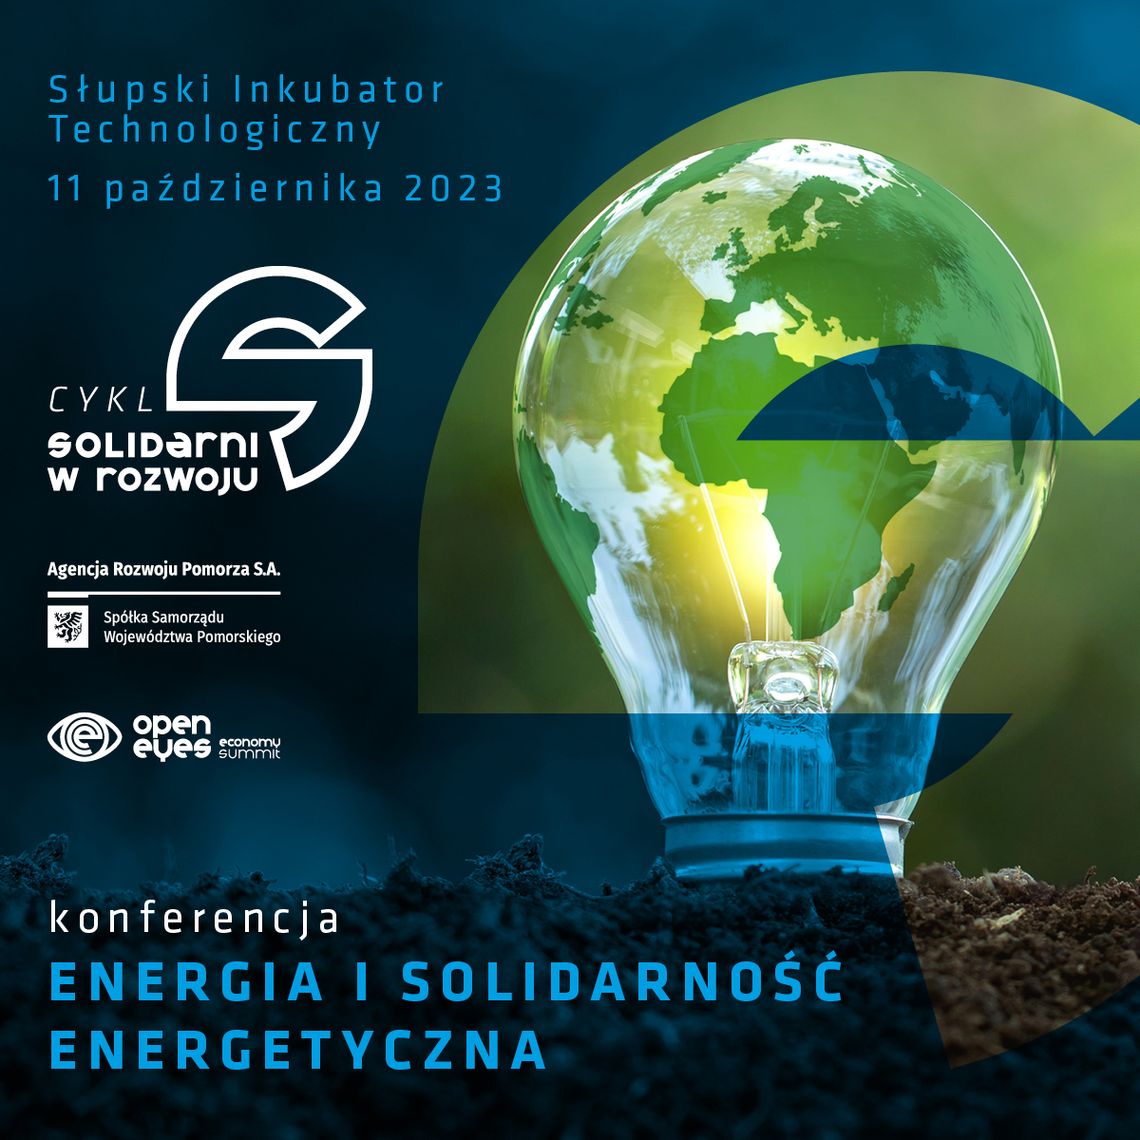 Energia i solidarność energetyczna. Nie możesz przegapić tej konferencji!